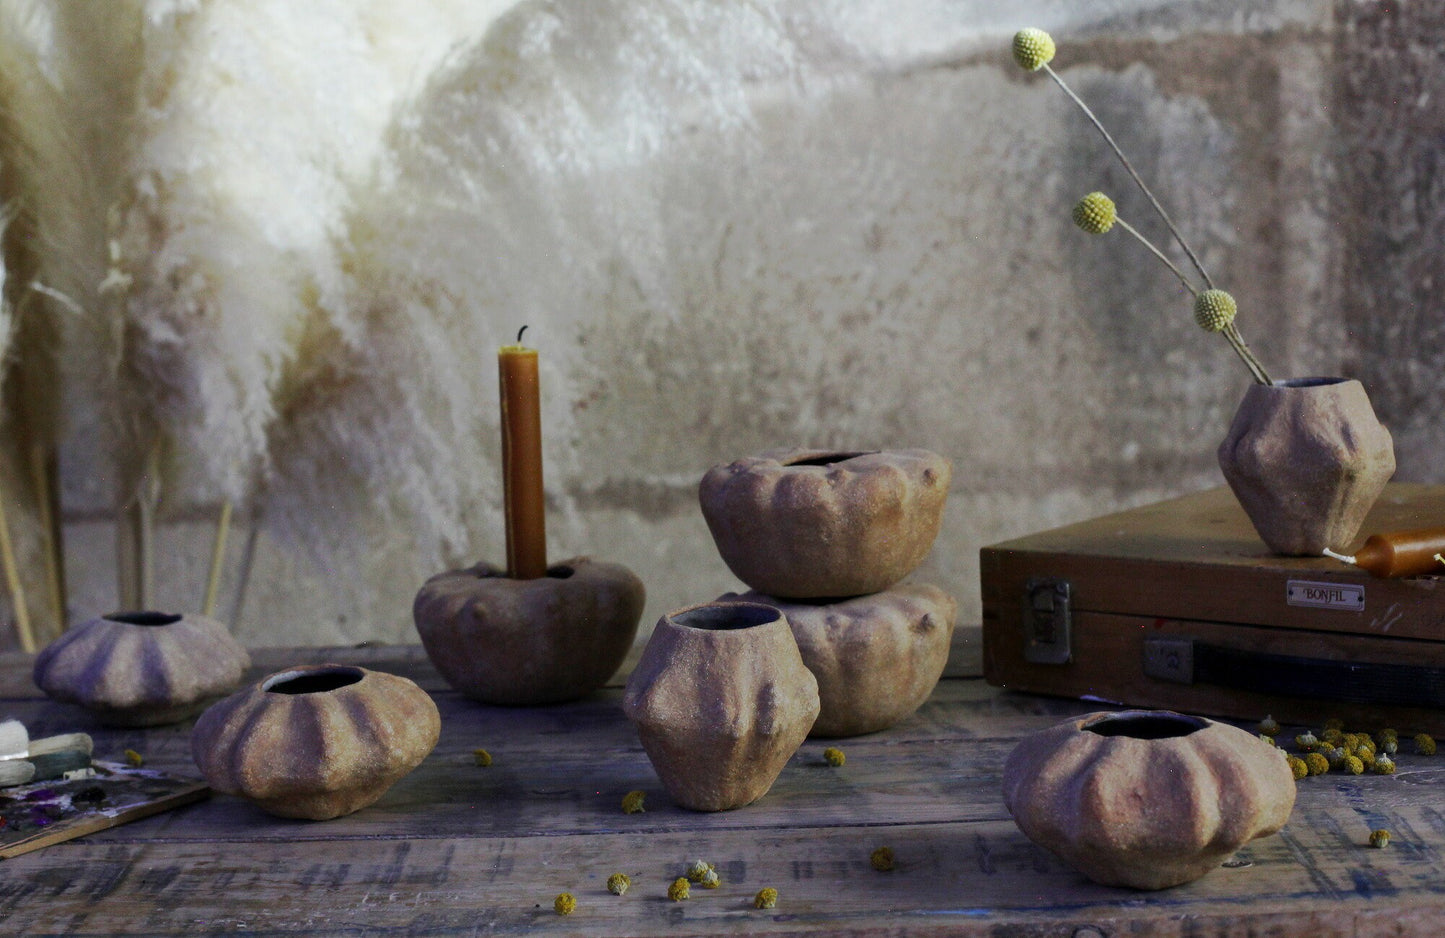 Gourd shaped stoneware vase, candle holder